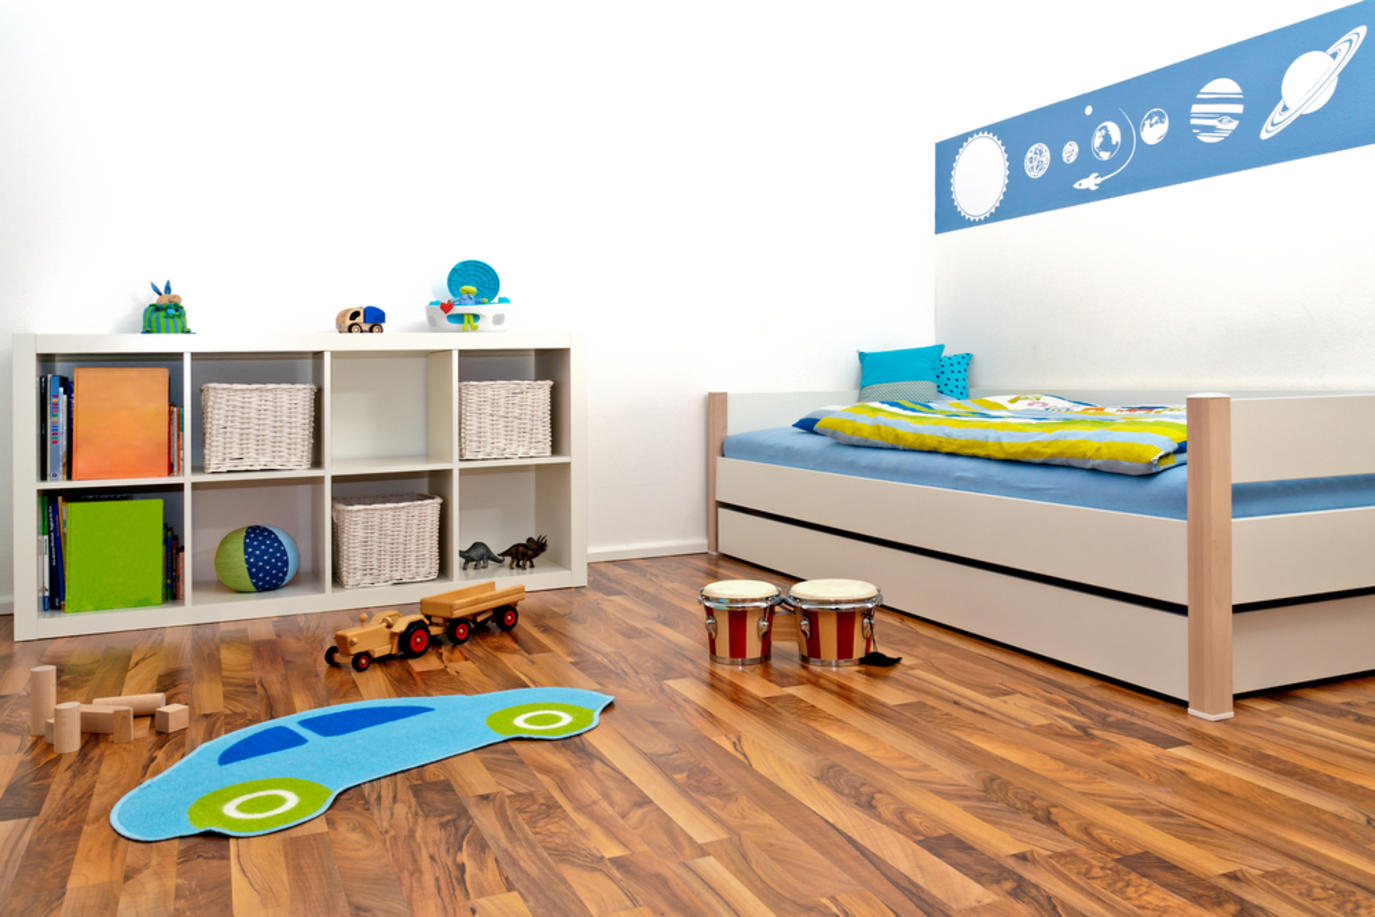 6 أفكار لتصميم غرف نوم اطفال مودرن مجلة سيدتي